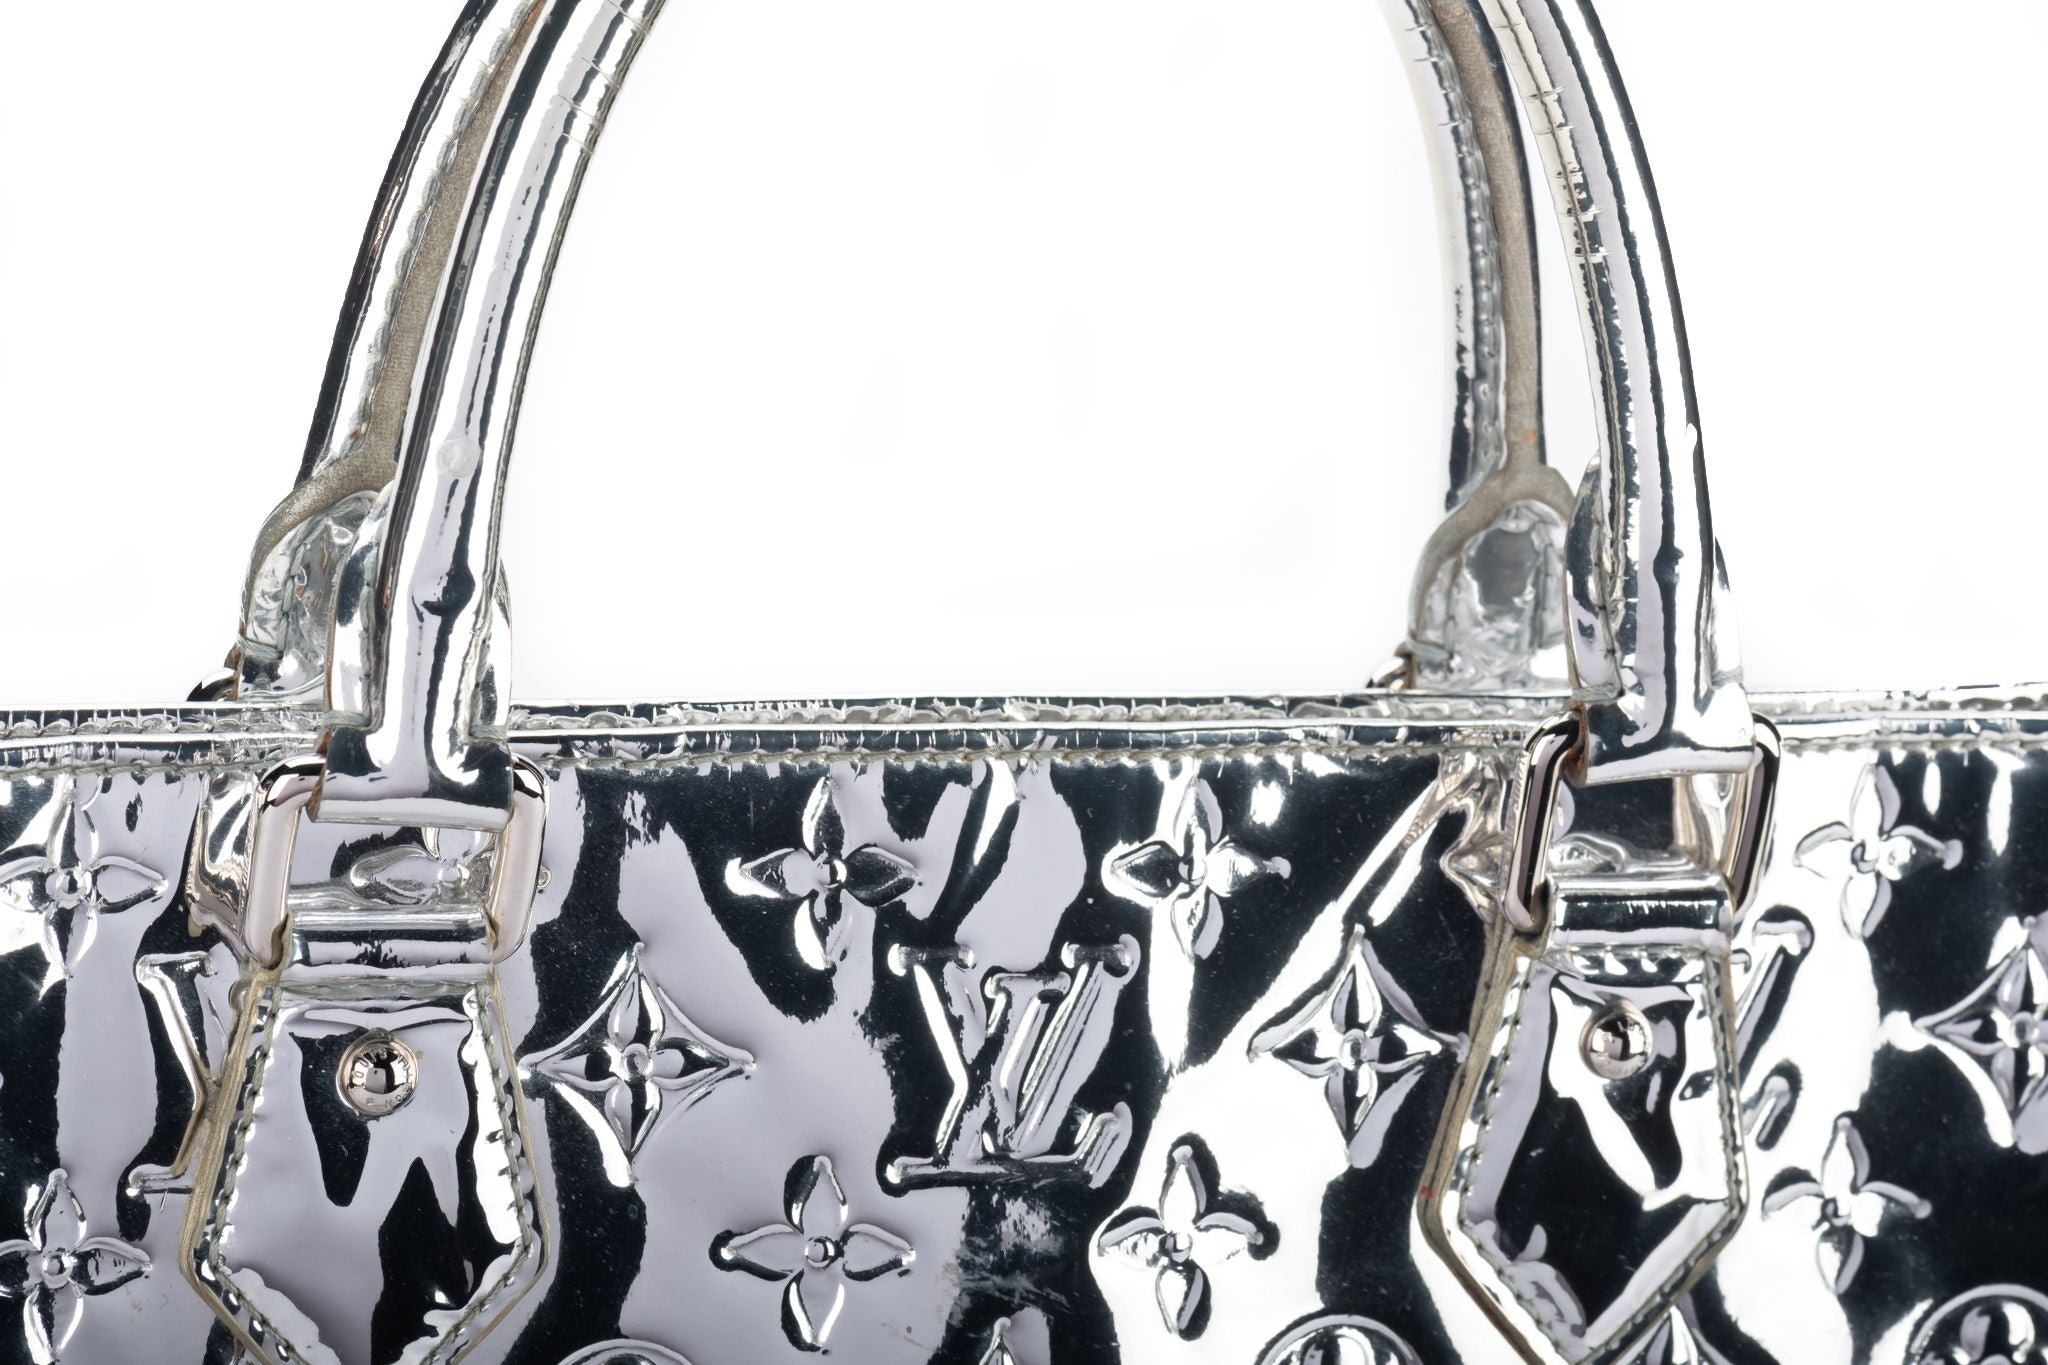 Vuitton Mirror Sac Plat Large Bag - Vintage Lux